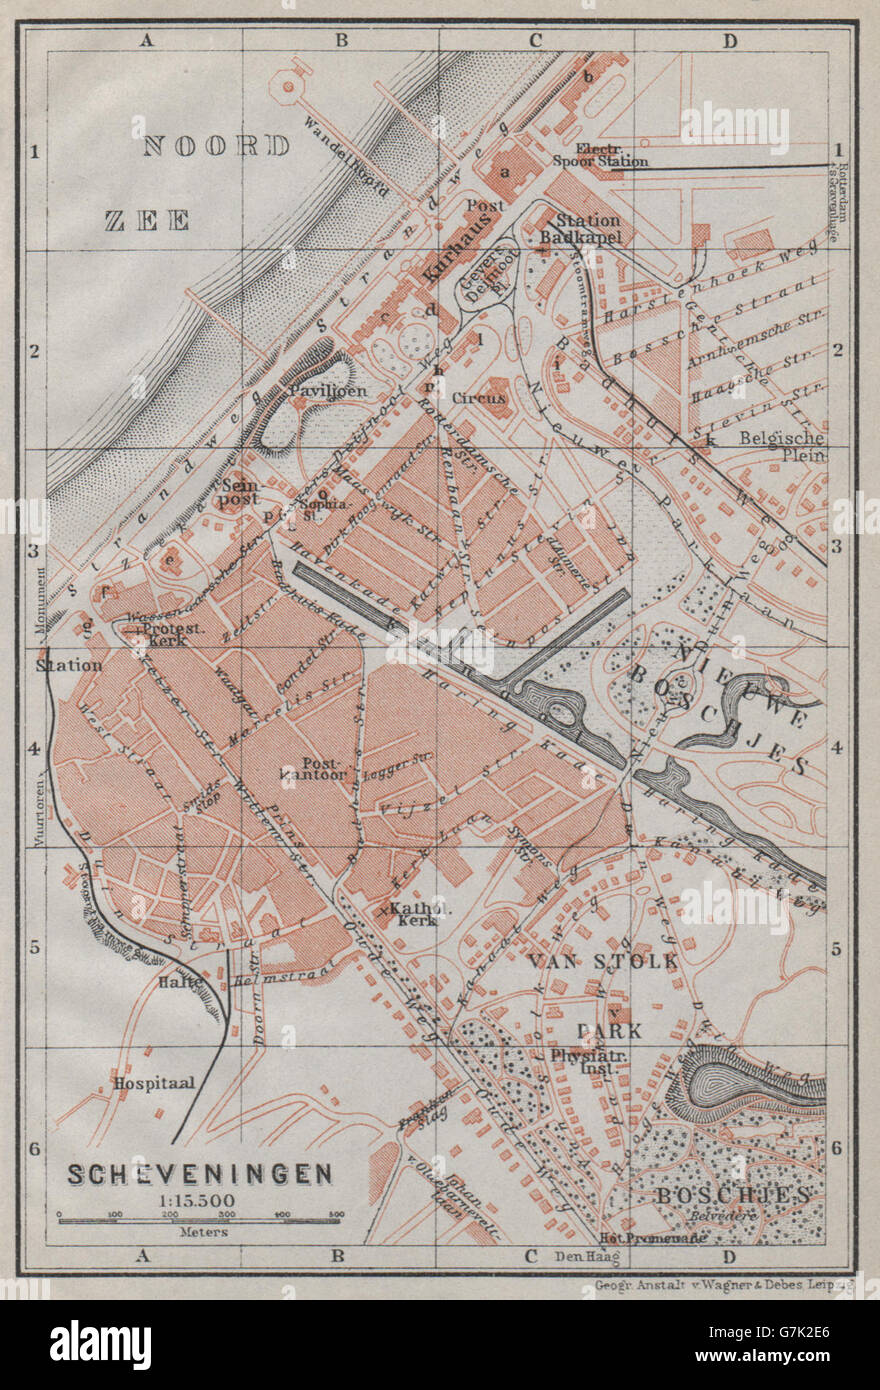 Ciudad de Scheveningen stadsplan. Den Haag La Haya. Países Bajos, 1910 mapa Foto de stock